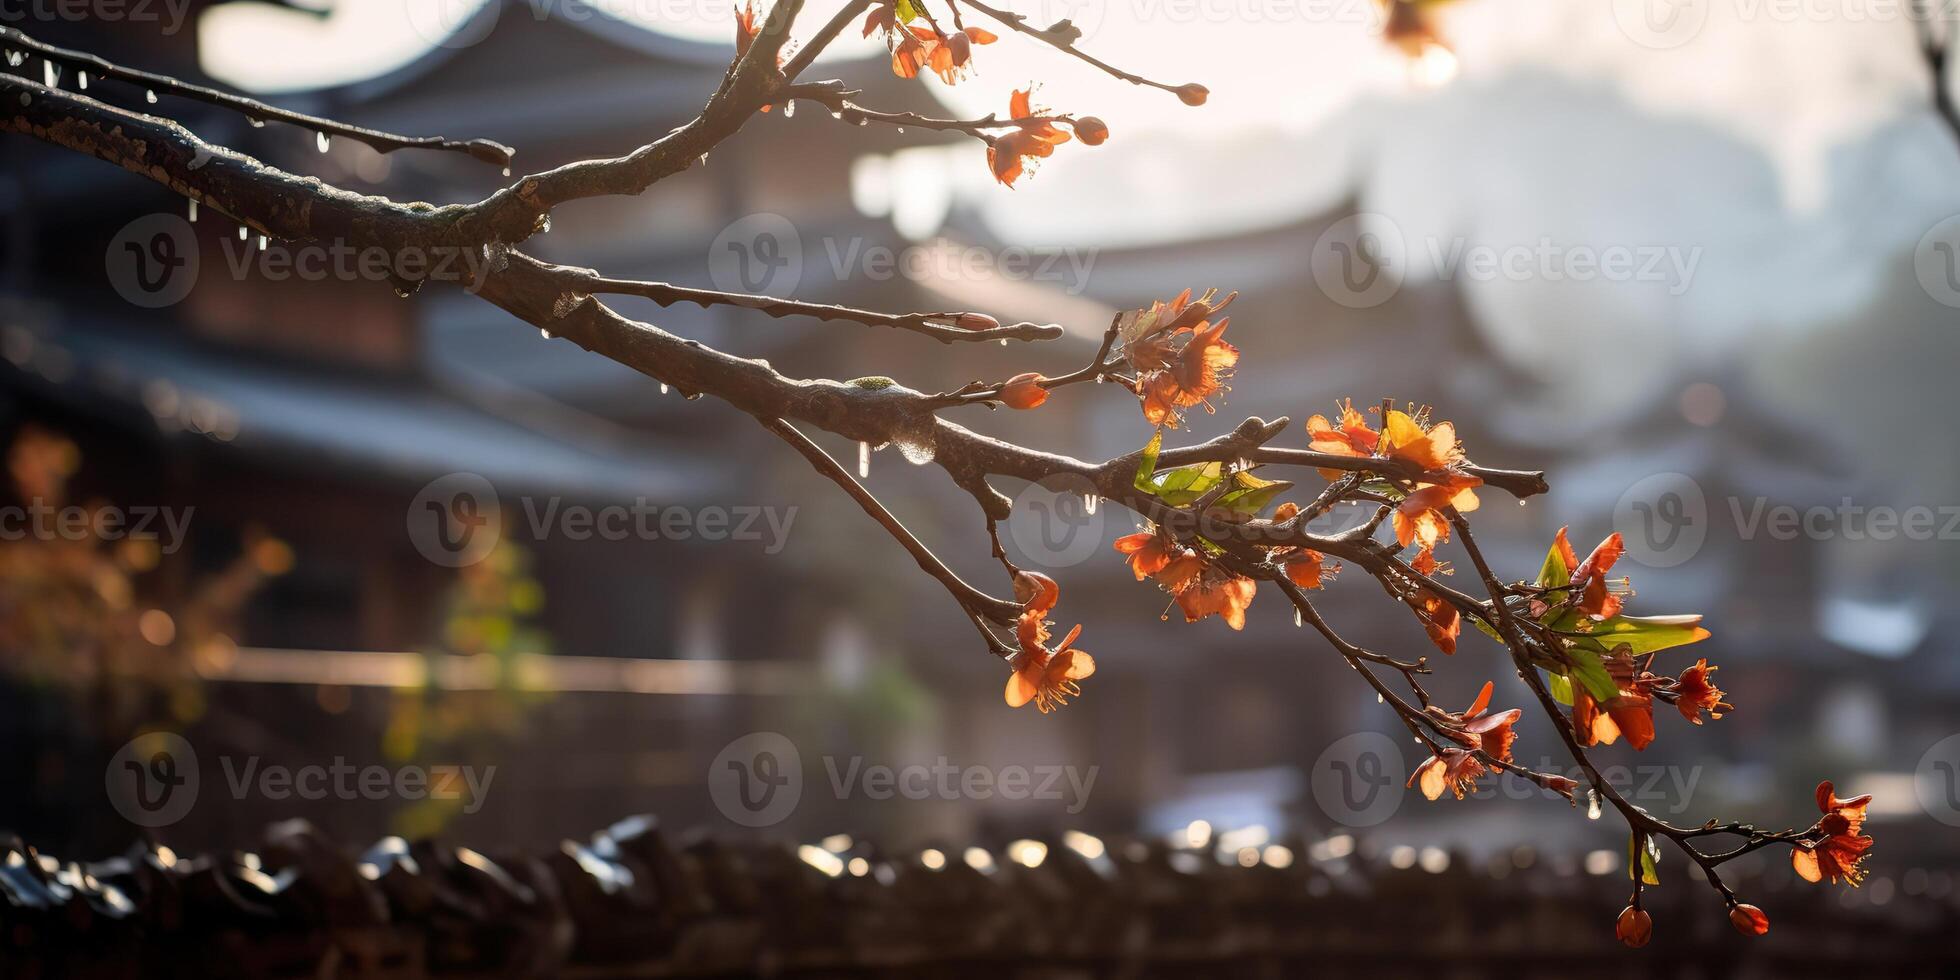 antiguo asiático japonés chino antiguo Clásico retro pueblo ciudad edificio templo con naturaleza árbol flores foto